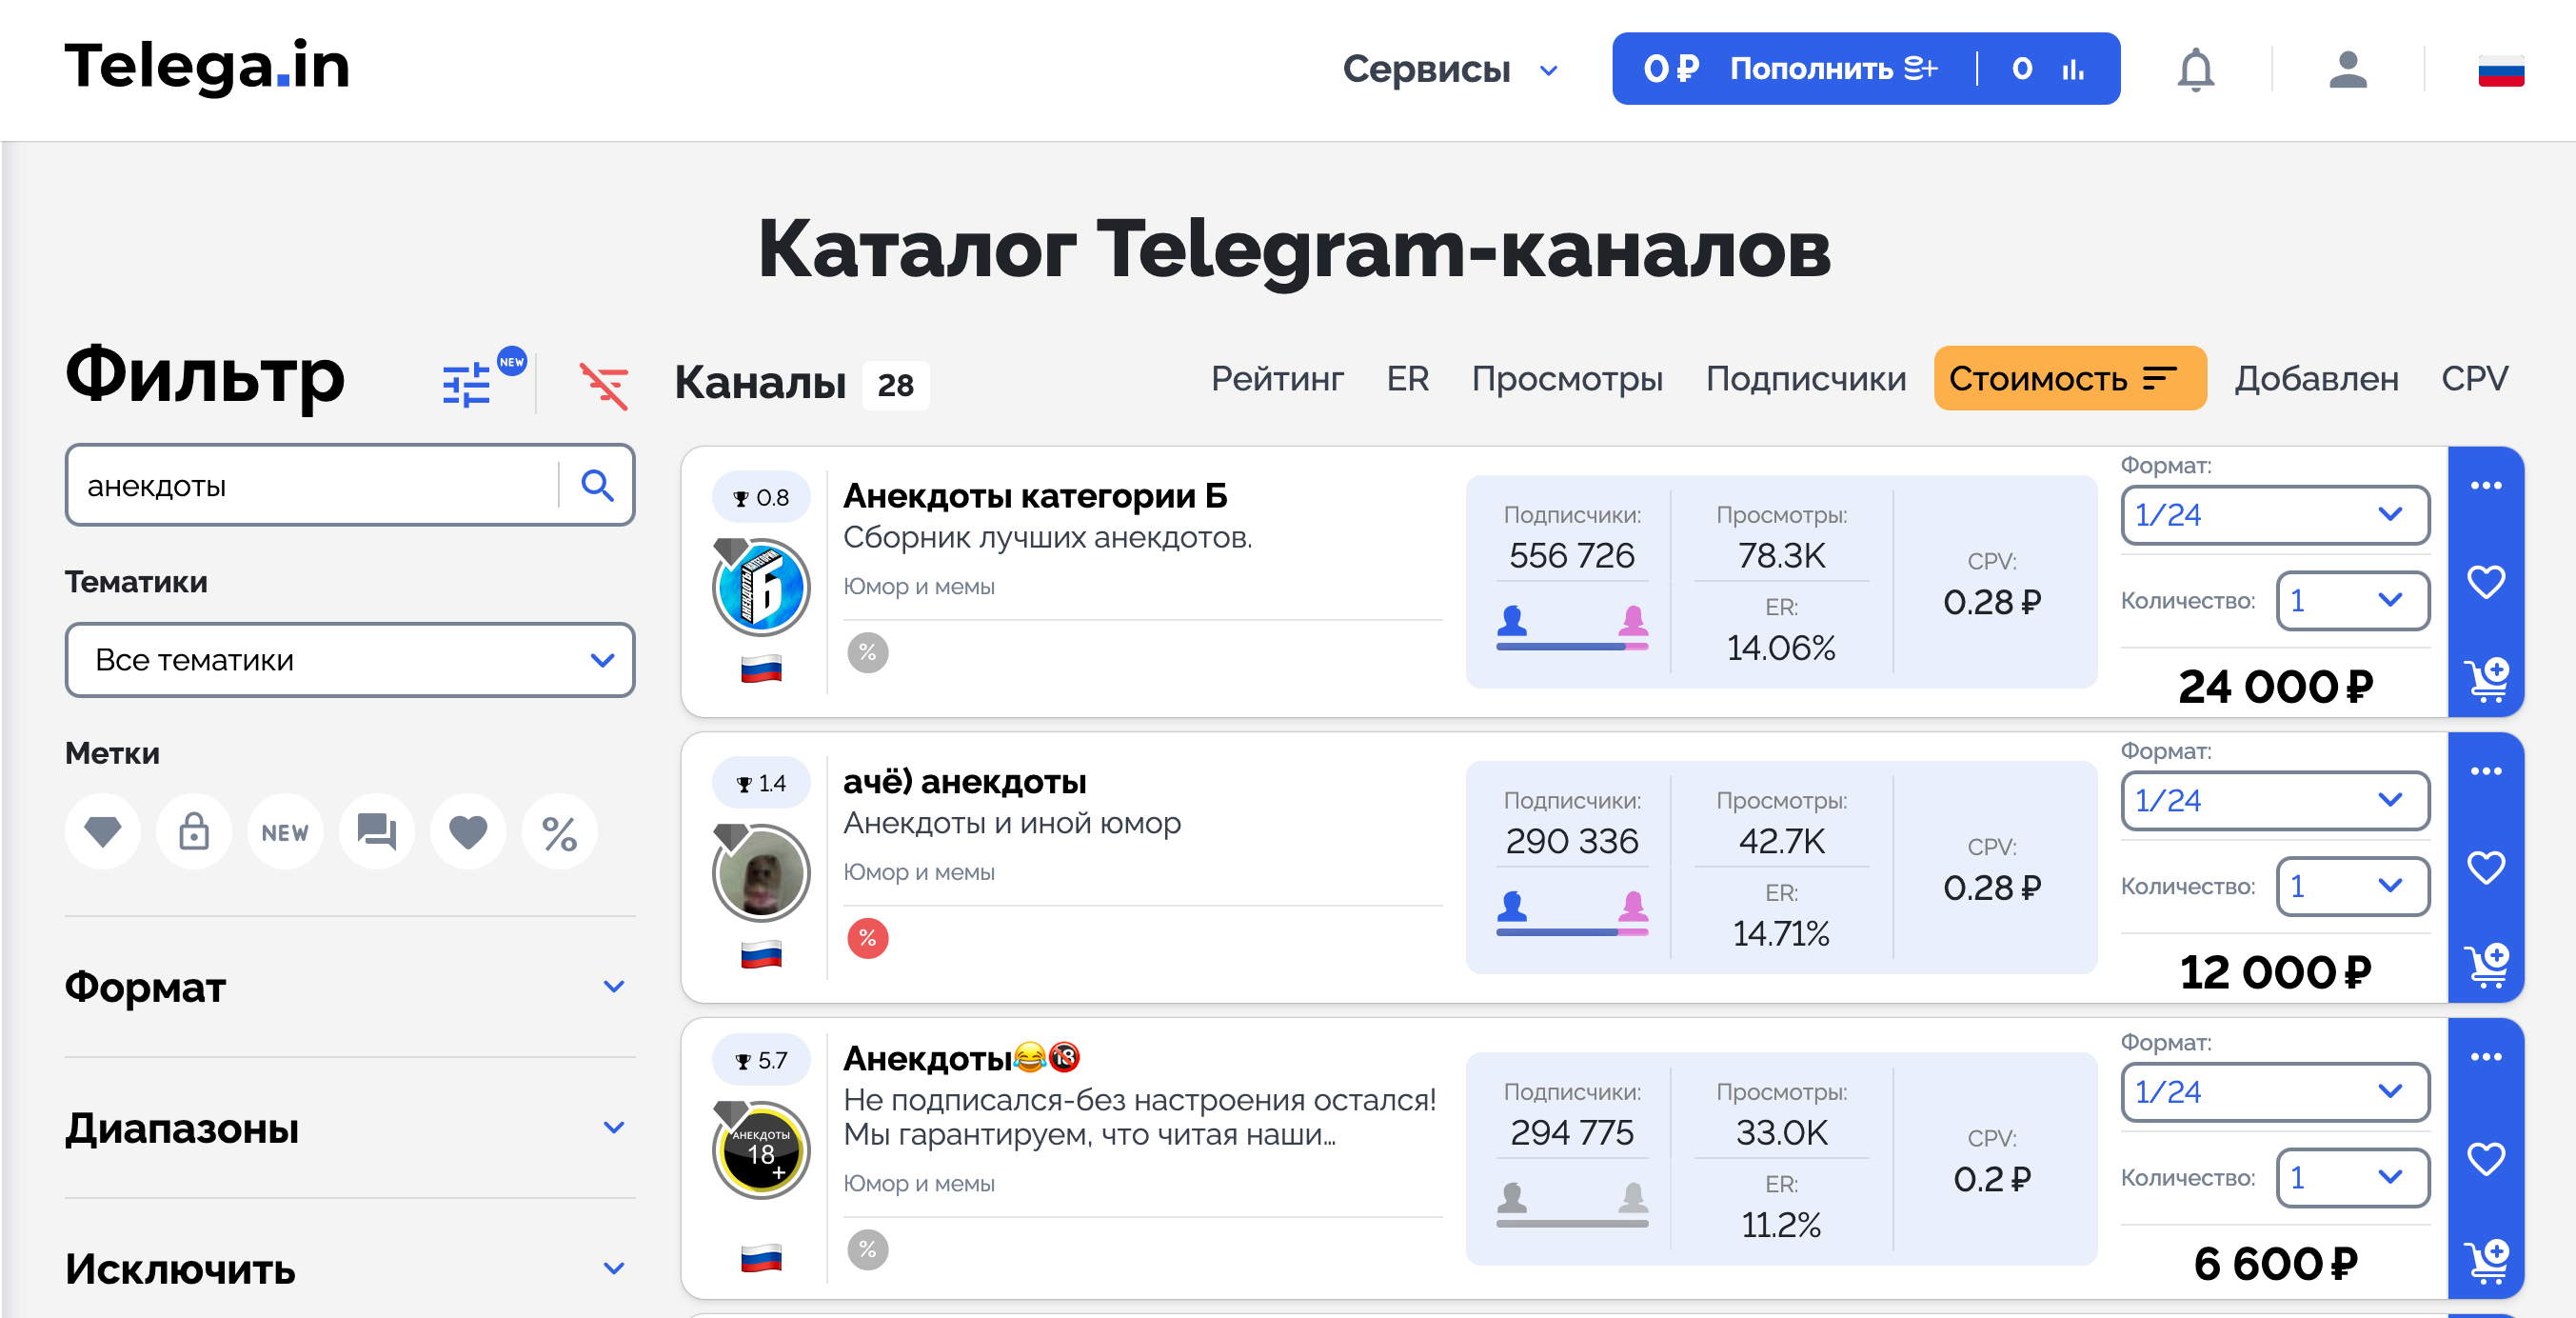 Заработок в телеграмме без вложений с выводом на сбербанк на русском языке фото 92